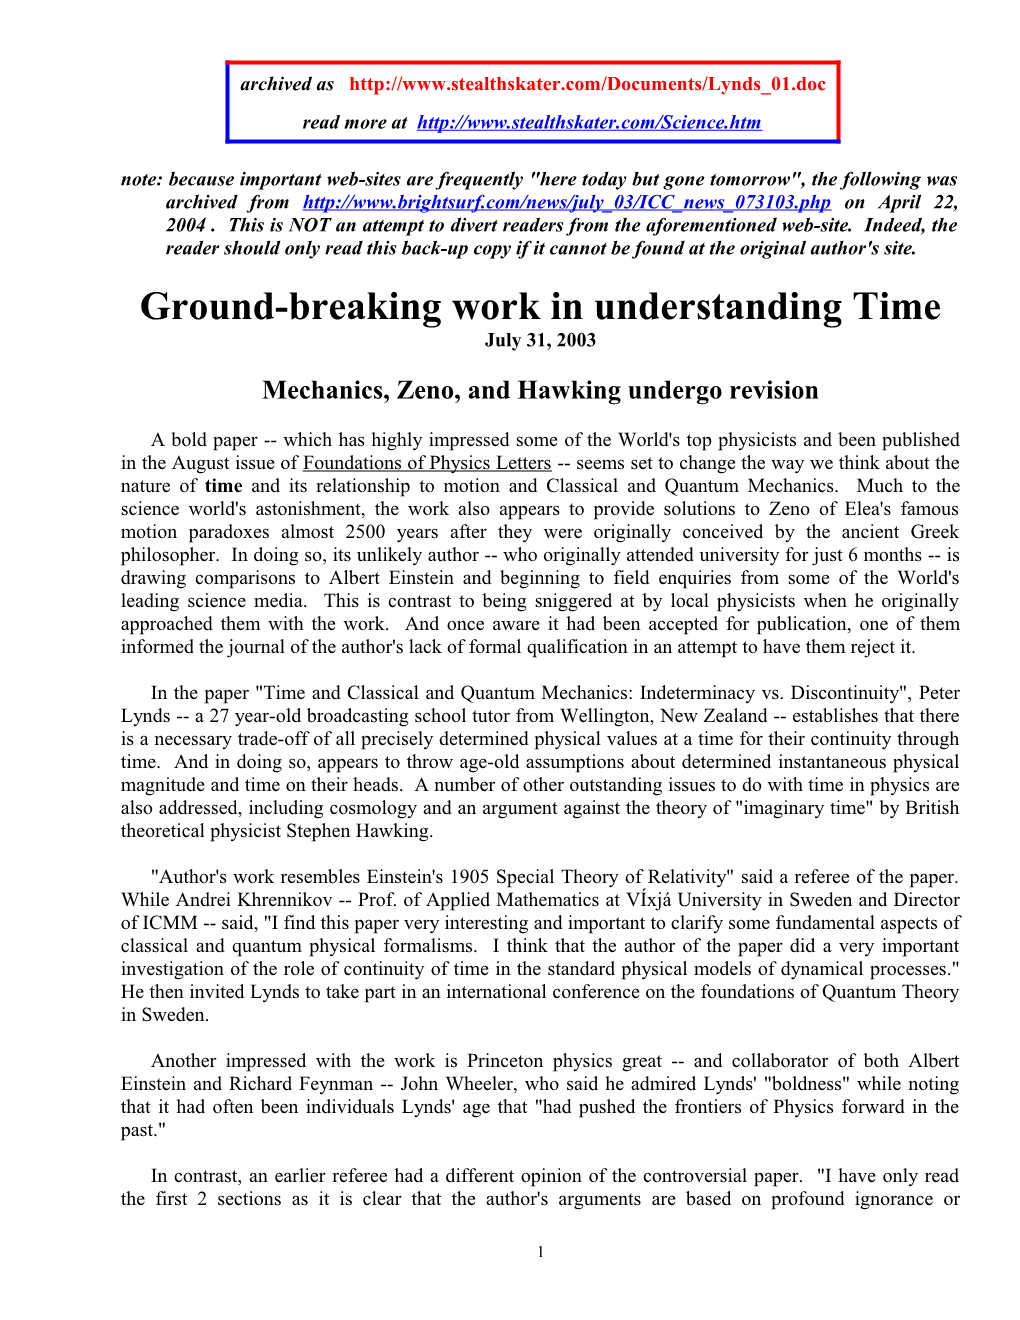 Ground-Breaking Work in Understanding Time